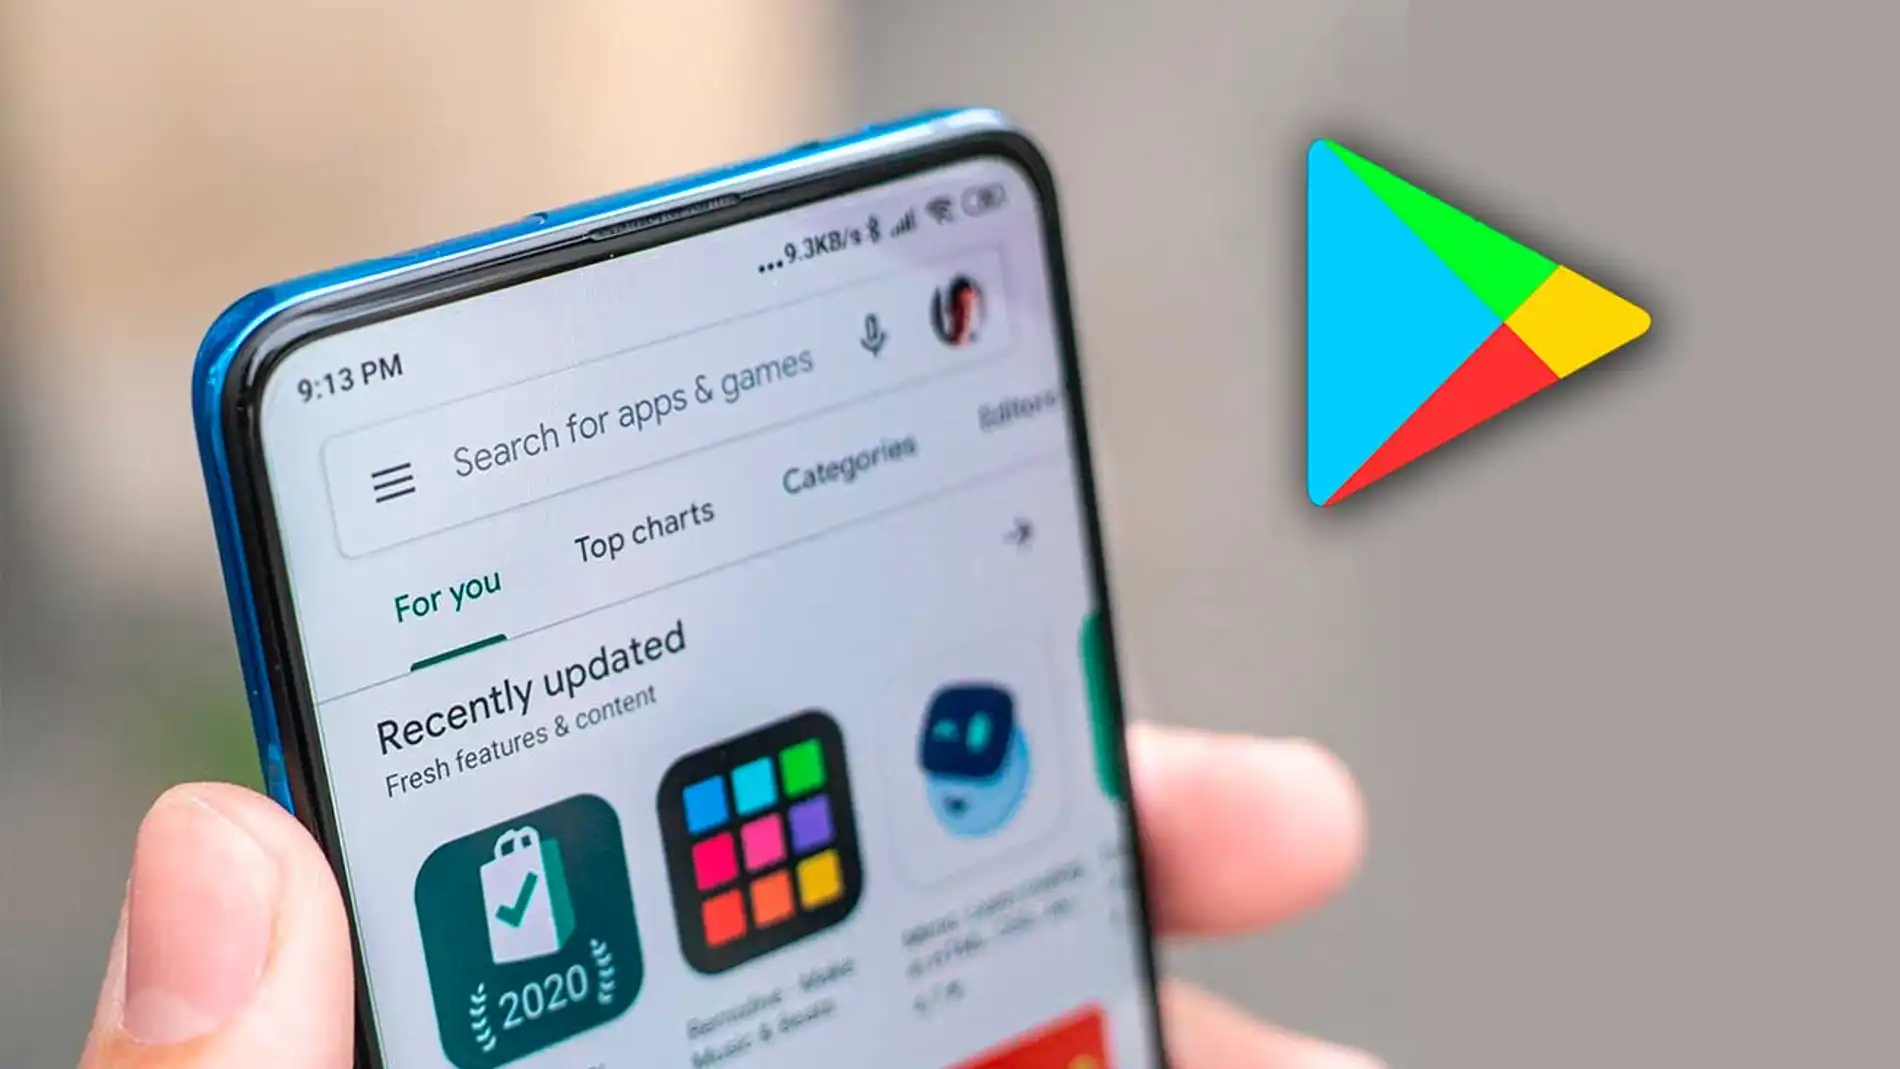 Cómo actualizar Google Play Store a la última versión 2021